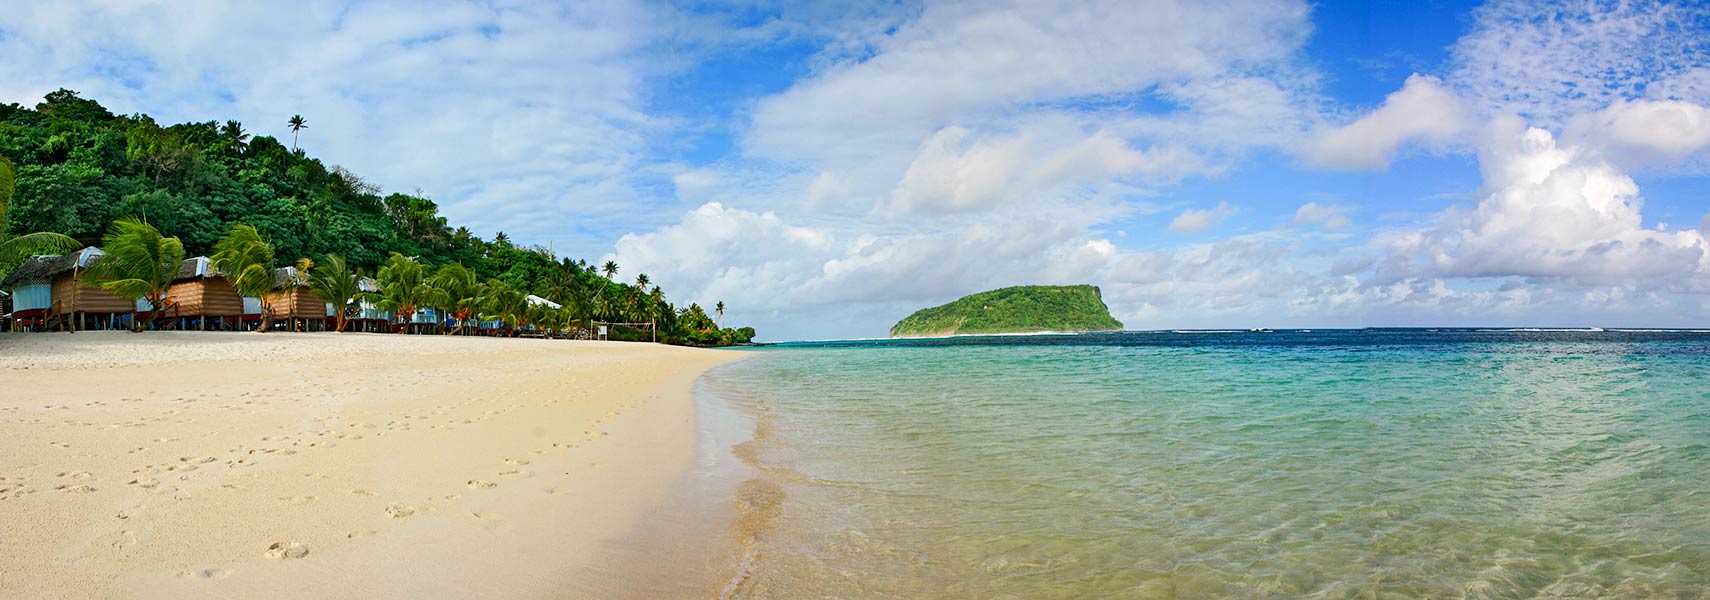 Lalomanu Beach with Nu'utele island, Upolu, Samoa